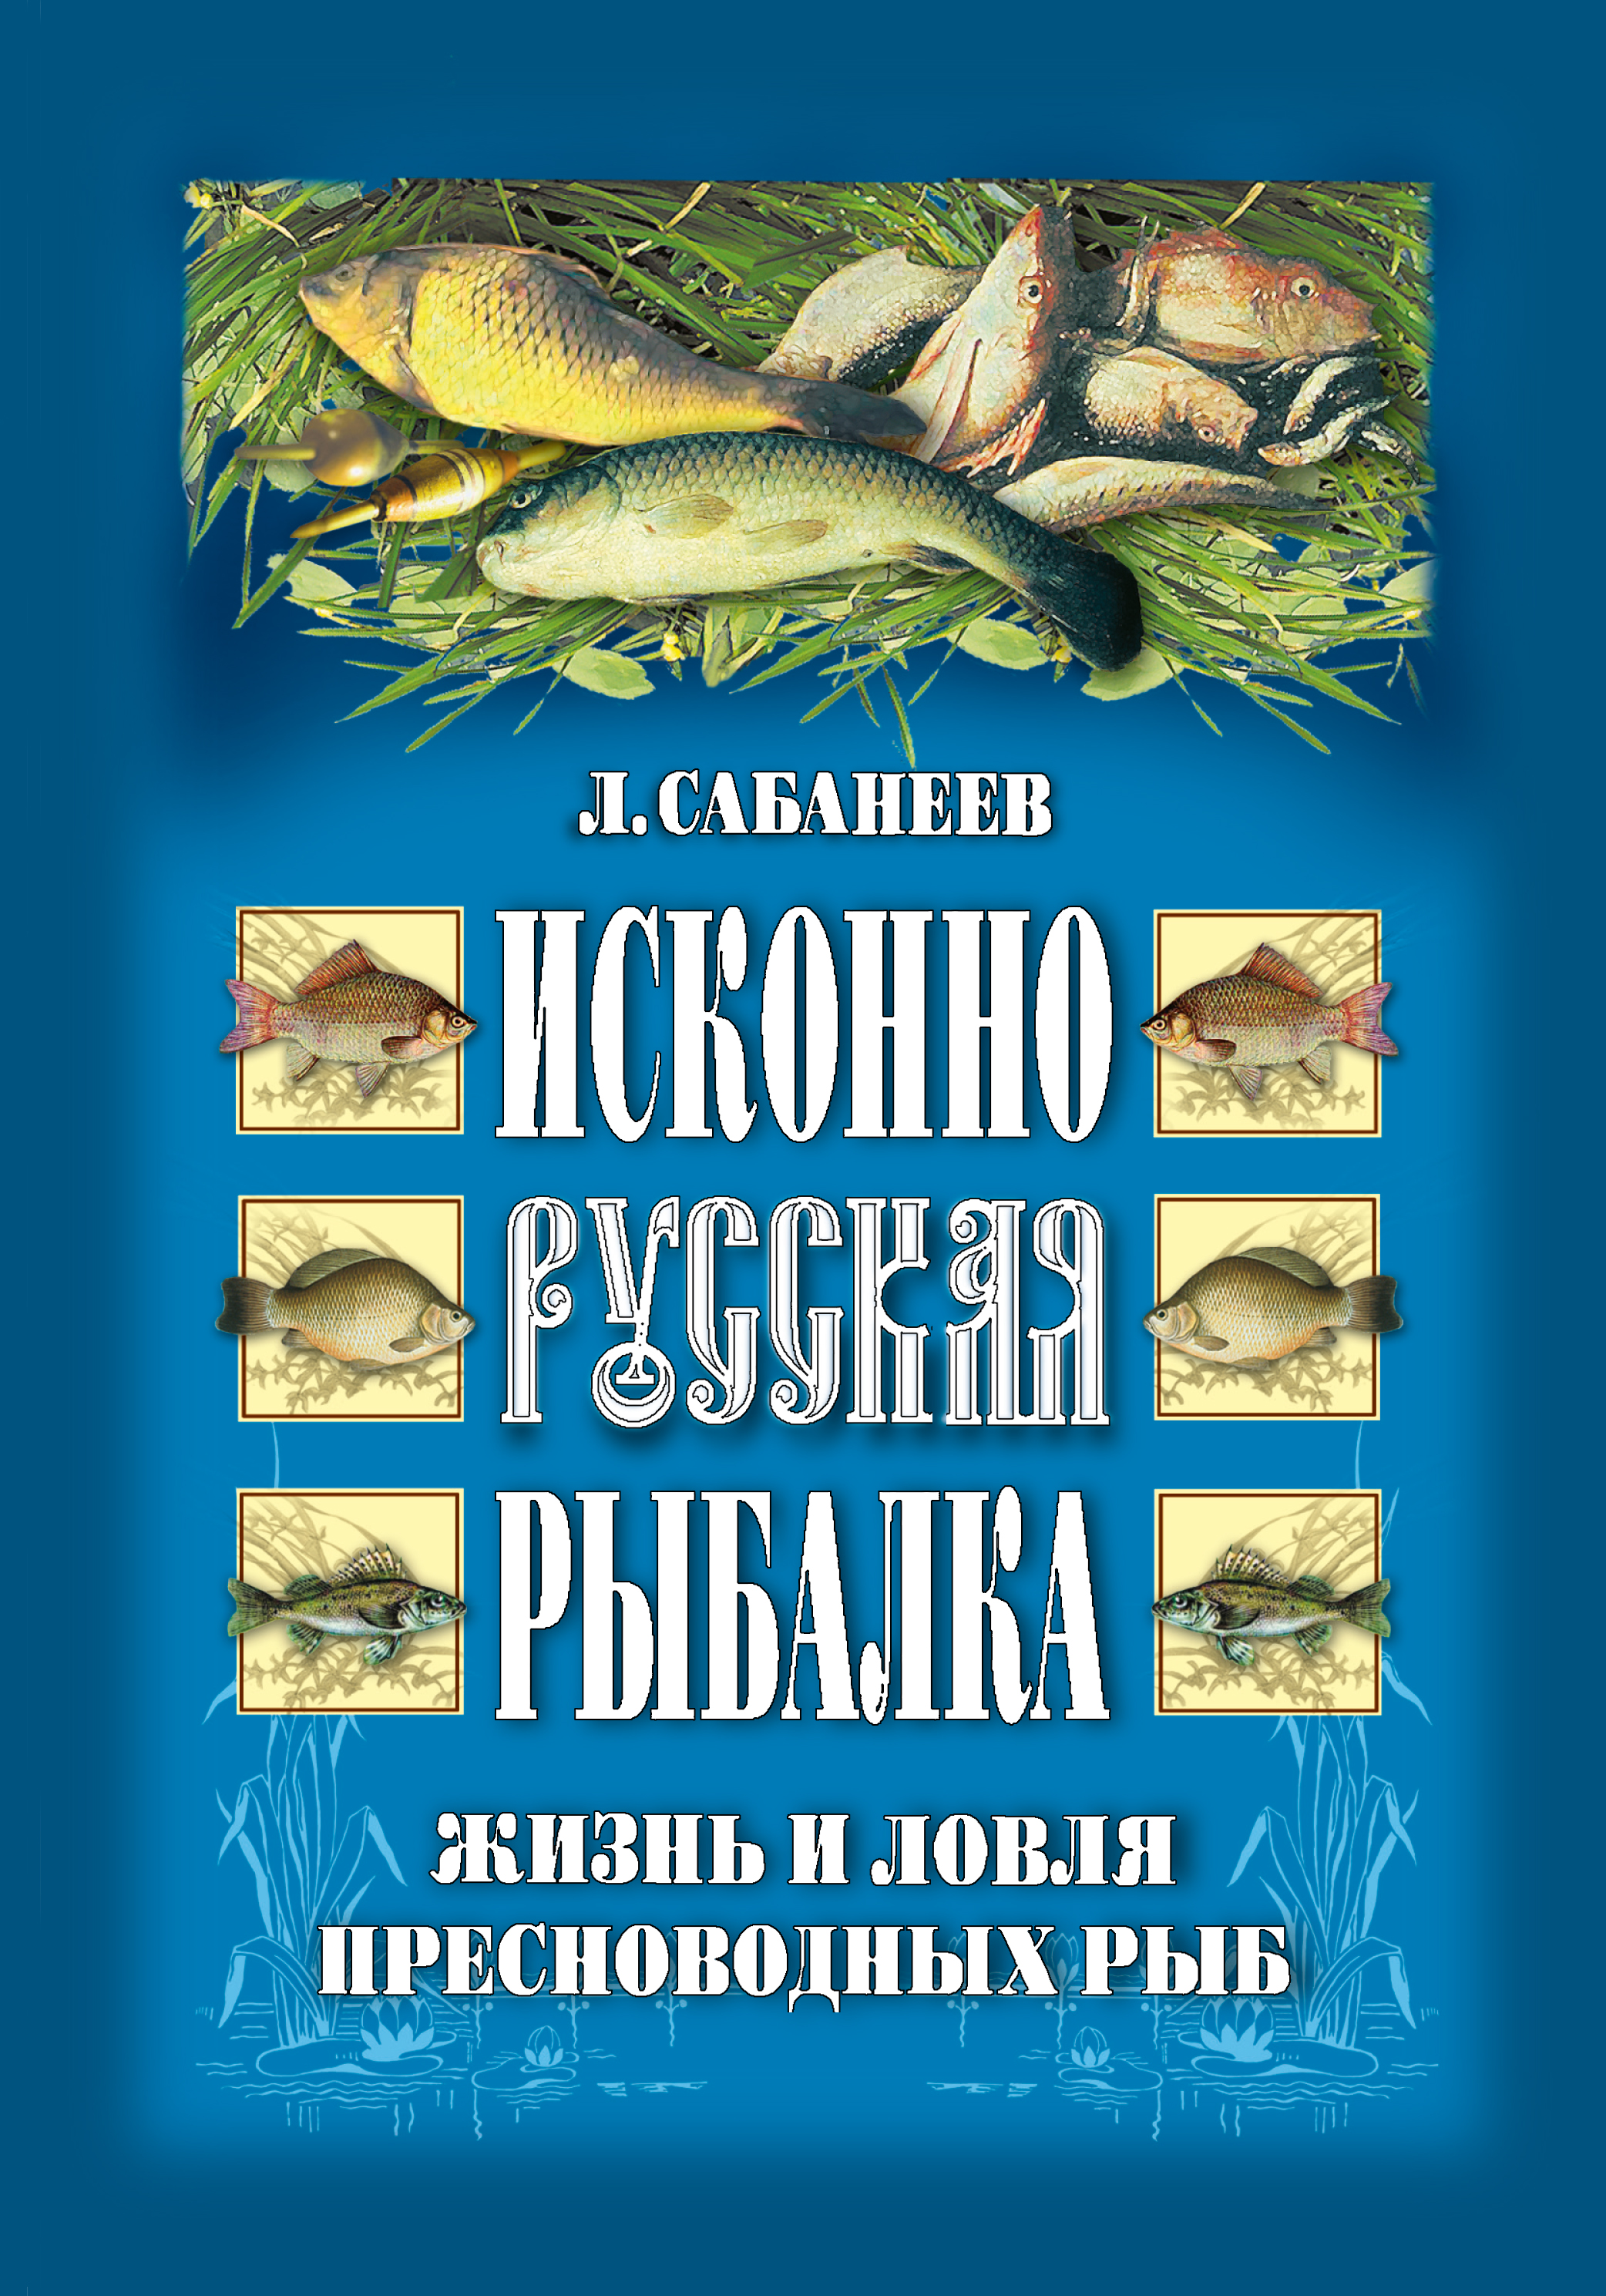 Книга Исконно русская рыбалка: Жизнь и ловля пресноводных рыб из серии , созданная Леонид Сабанеев, может относится к жанру Хобби, Ремесла, Природа и животные. Стоимость электронной книги Исконно русская рыбалка: Жизнь и ловля пресноводных рыб с идентификатором 9741376 составляет 99.00 руб.